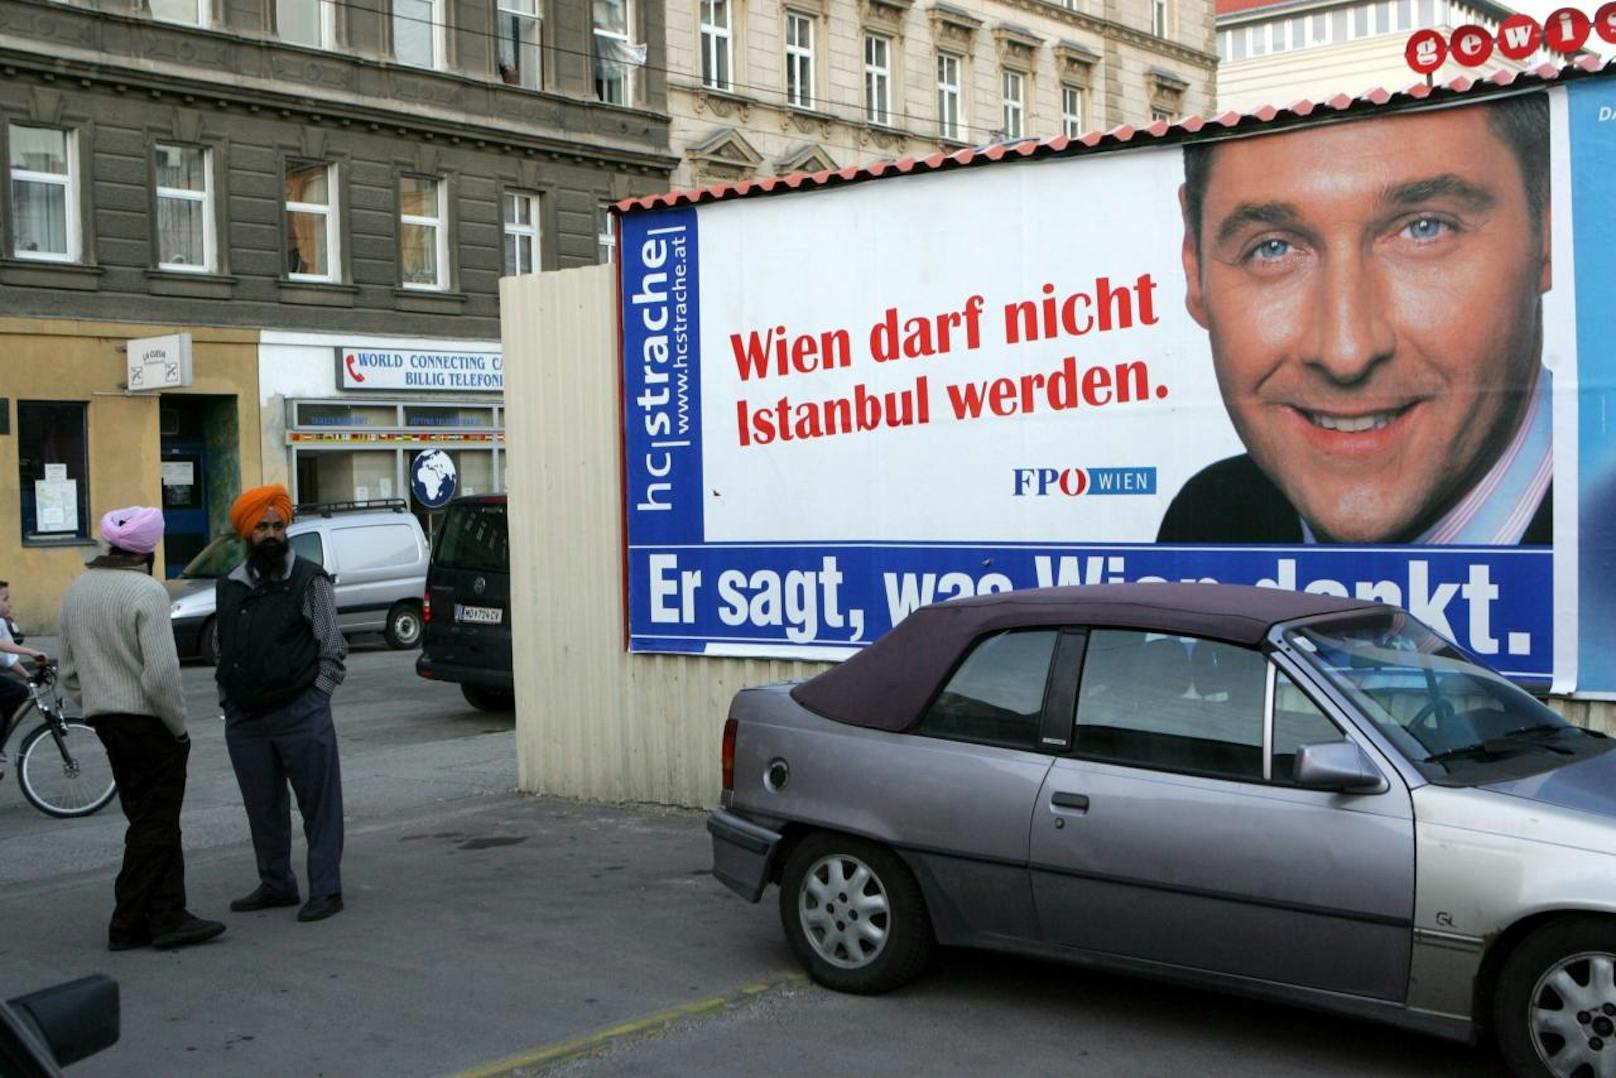 Die Kampagne der FPÖ wurde als fremdenfeindlich und diskriminierend eingestuft. Im Wahlkampf ließ Strache den Wahlslogan "Wien darf nicht Istanbul werden!" plakatieren.